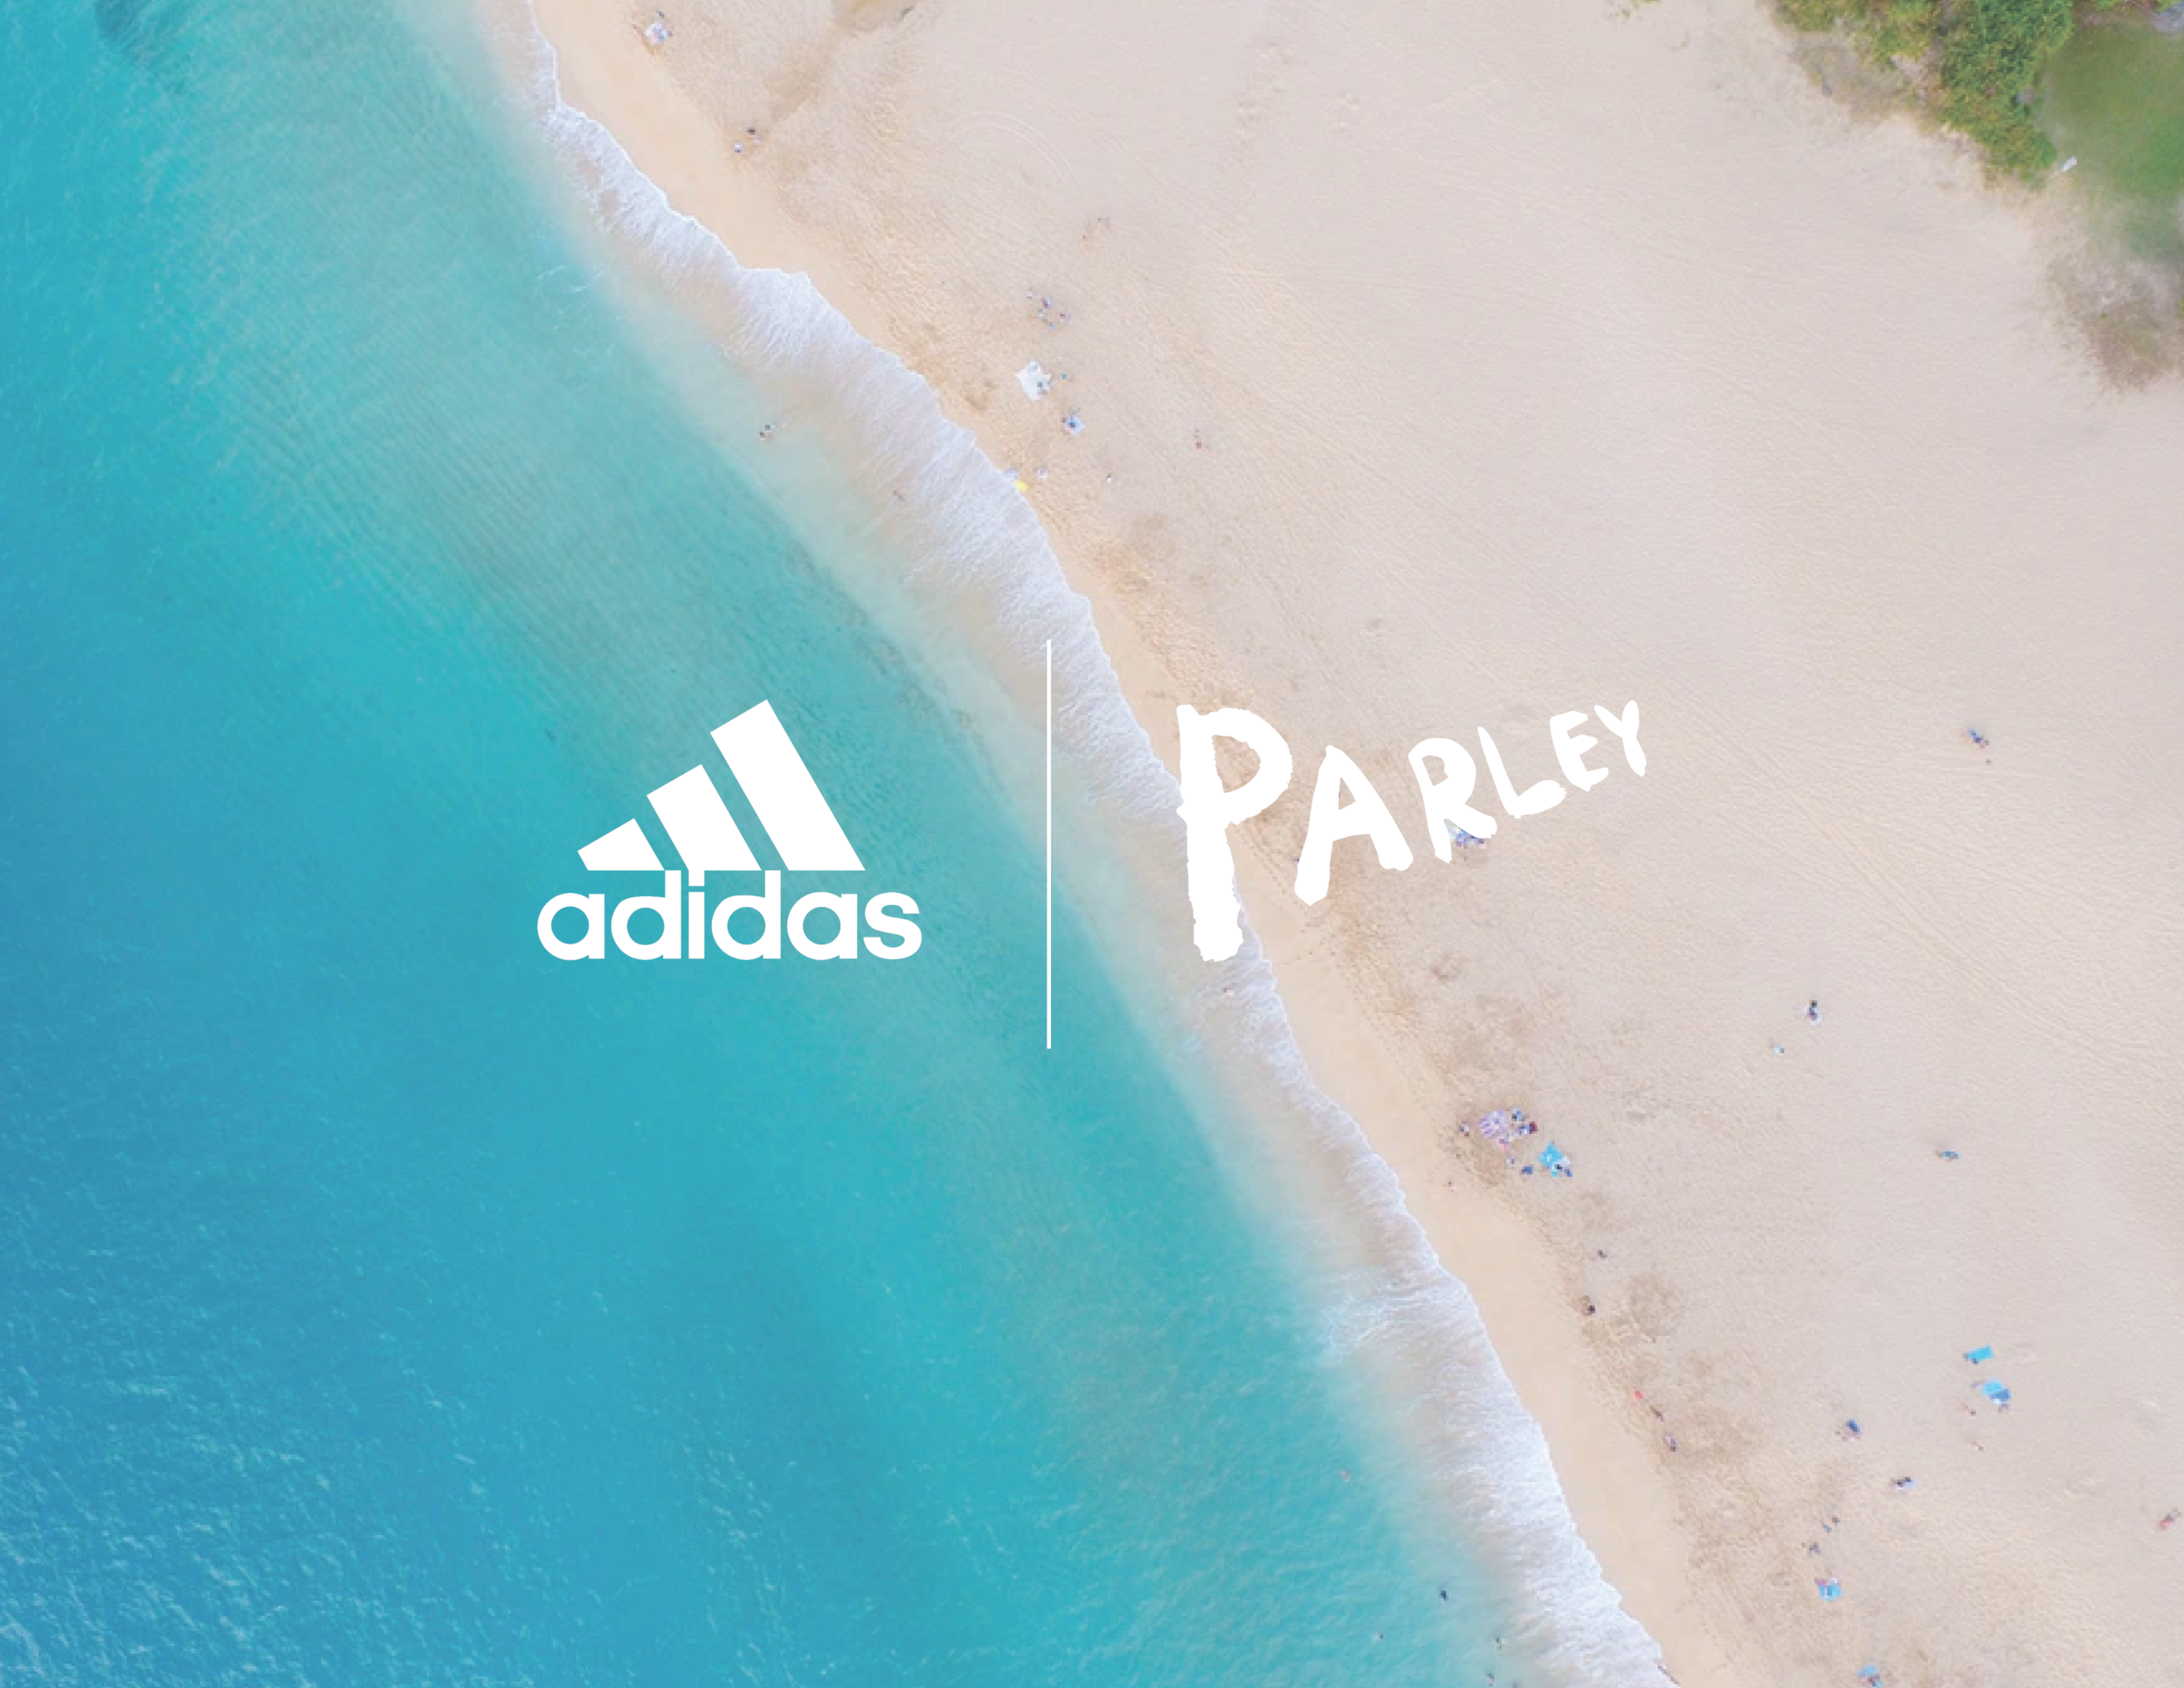 Adidas x Parley Ocean Roamer - 2 Weeks